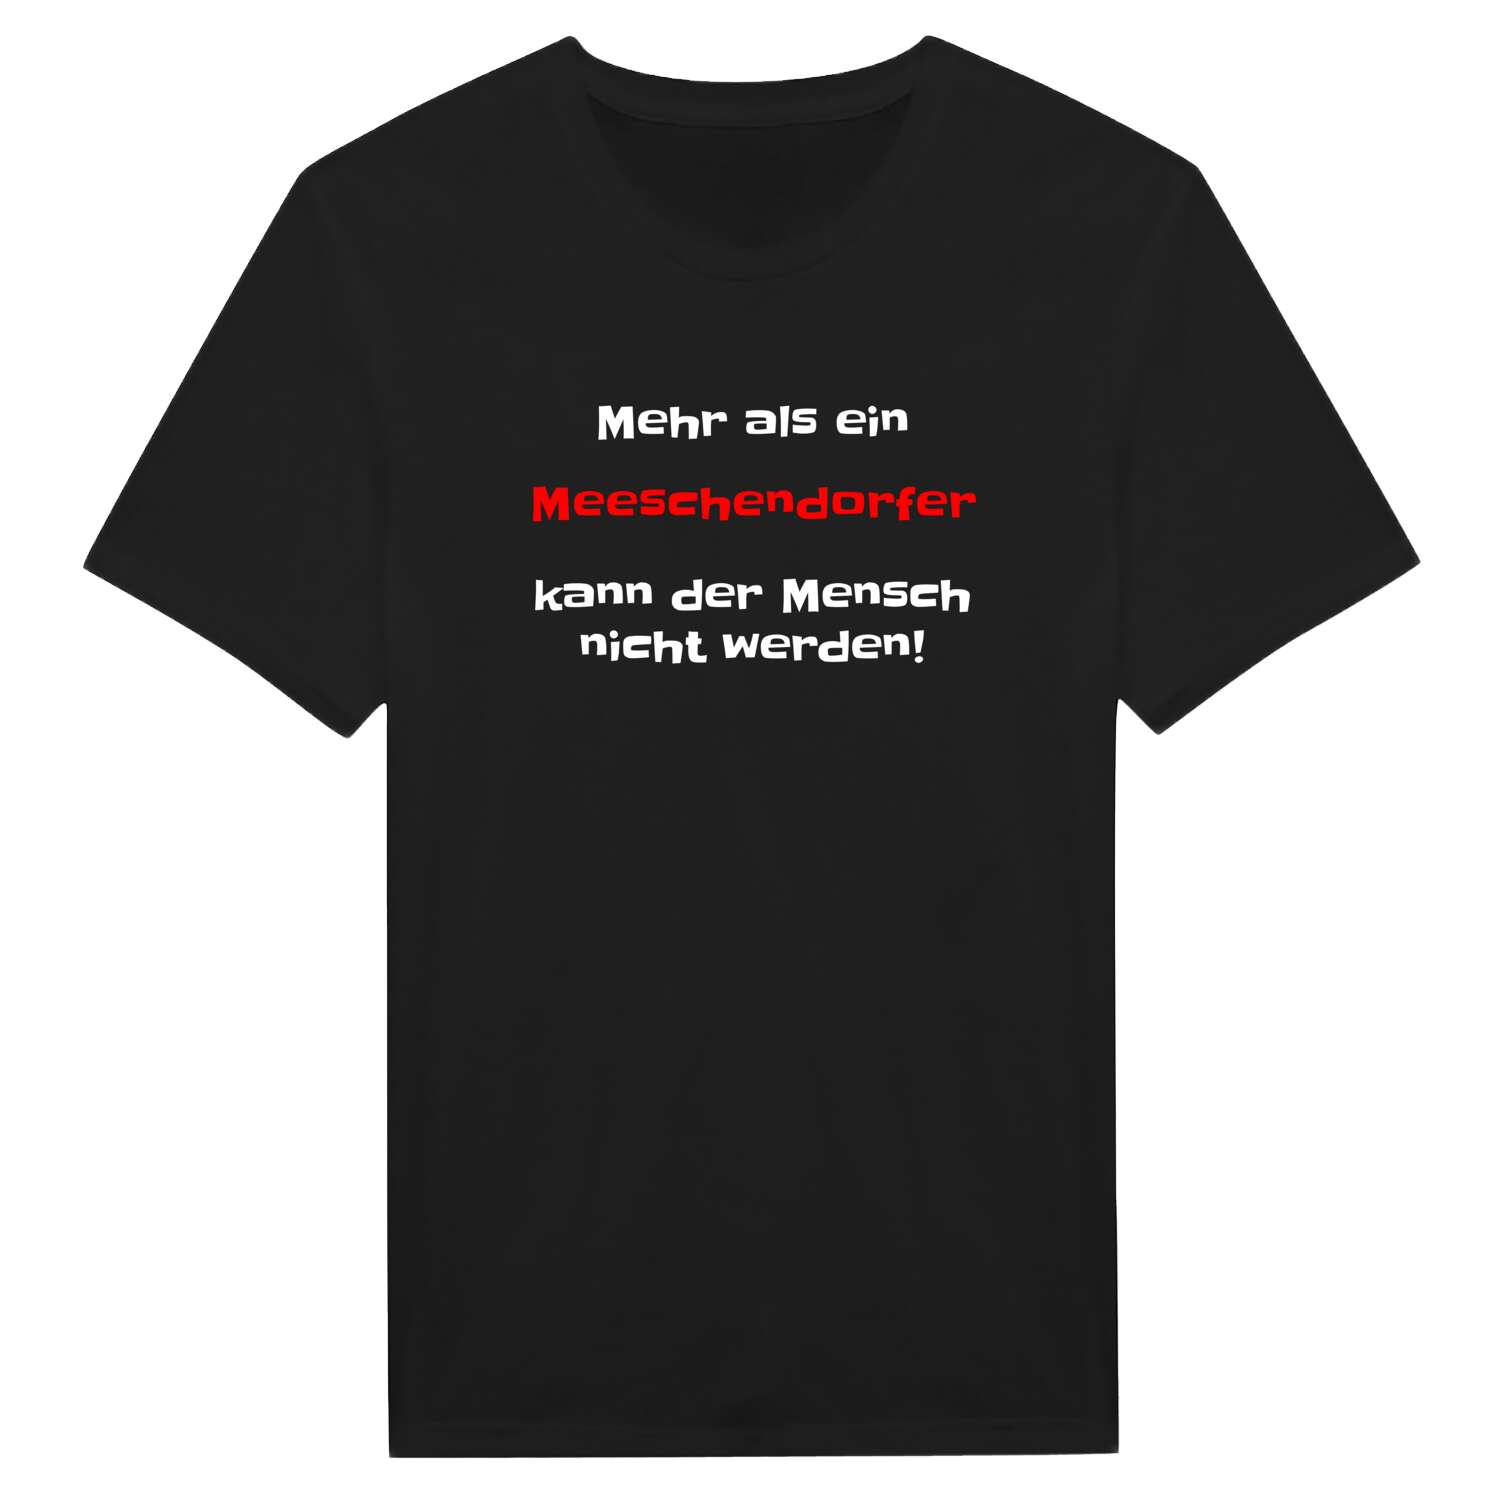 Meeschendorf T-Shirt »Mehr als ein«